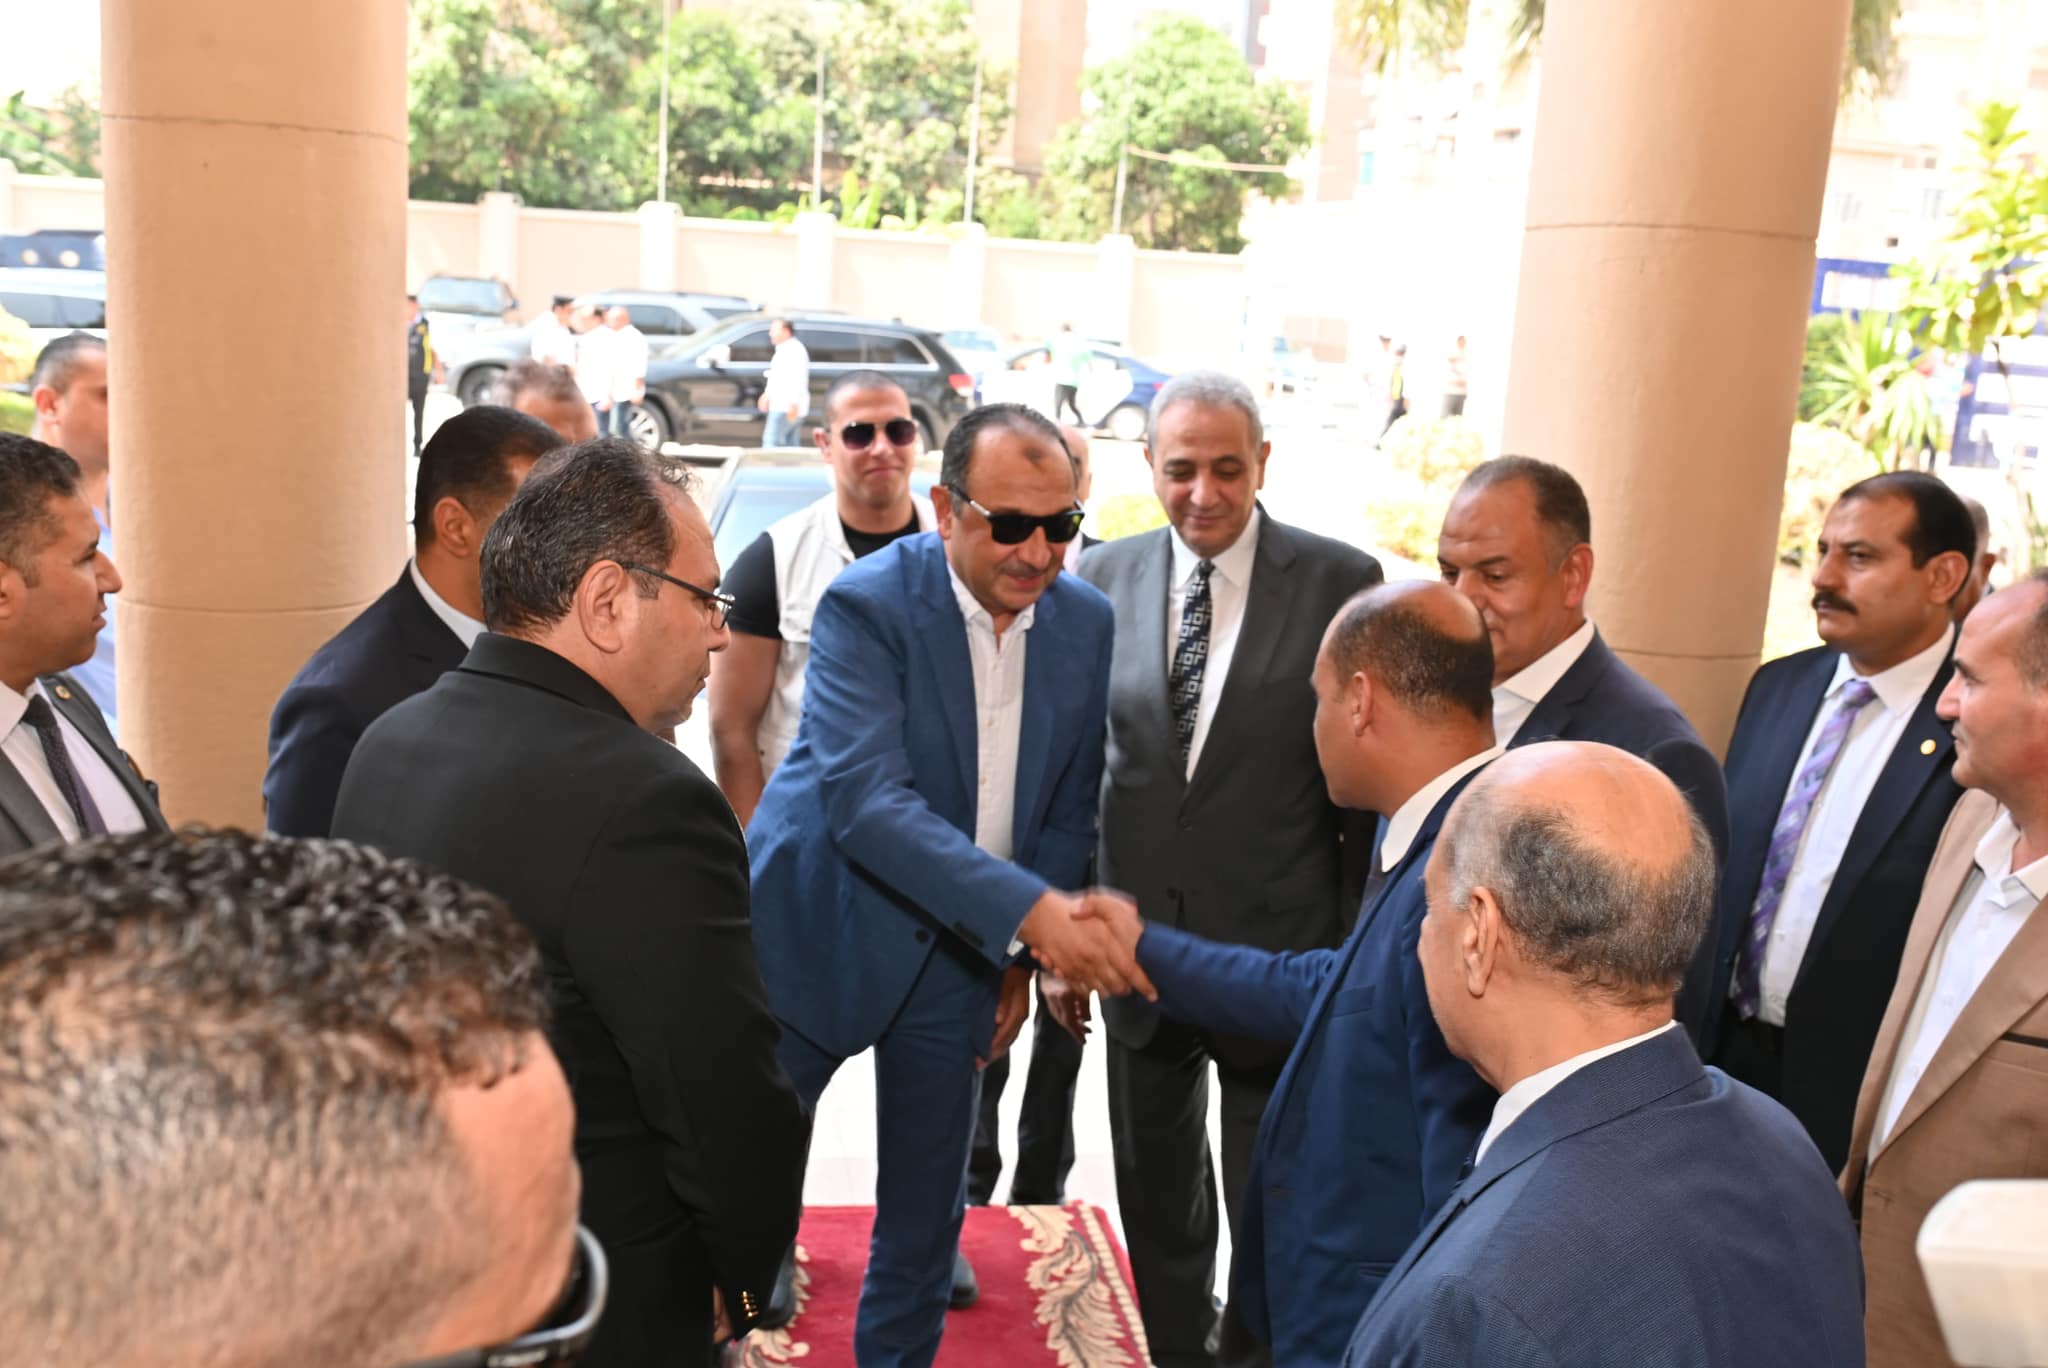 وزير قطاع الأعمال يستهل زيارته لـ"غزل المحلة" بلقاء محافظ الغربية ونواب البرلمان